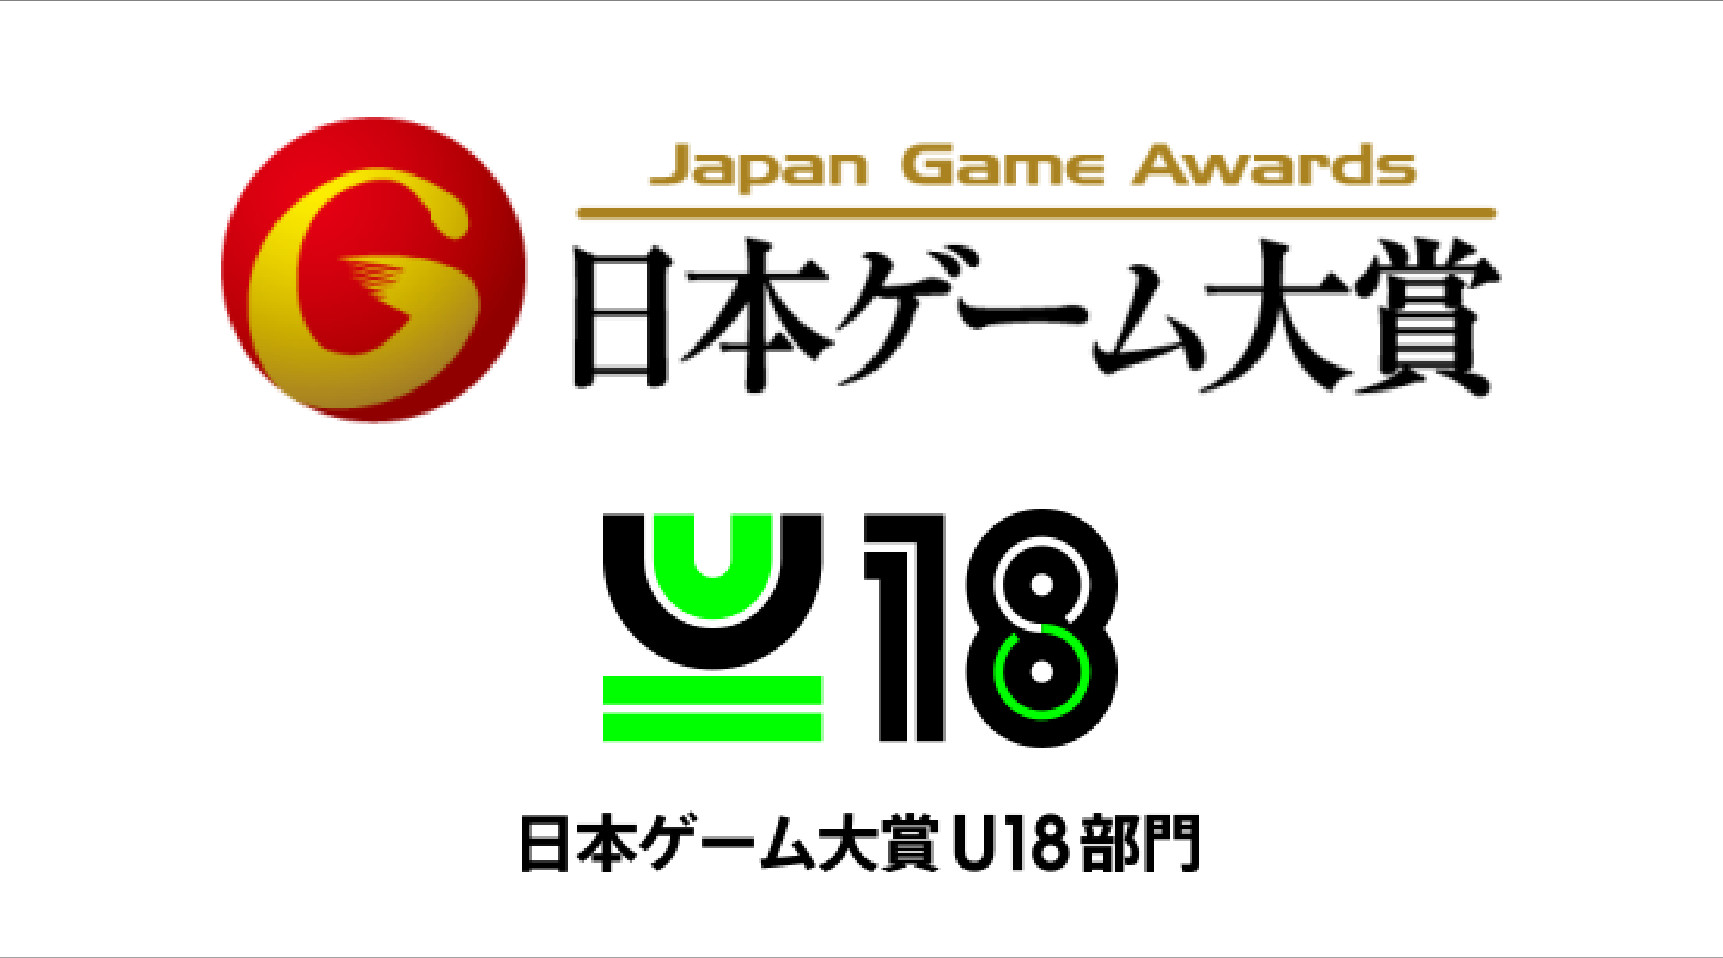 集え 次世代の担うゲームクリエイター 日本ゲーム大賞 U18部門 のエントリー受付中 Esports World Eスポーツワールド